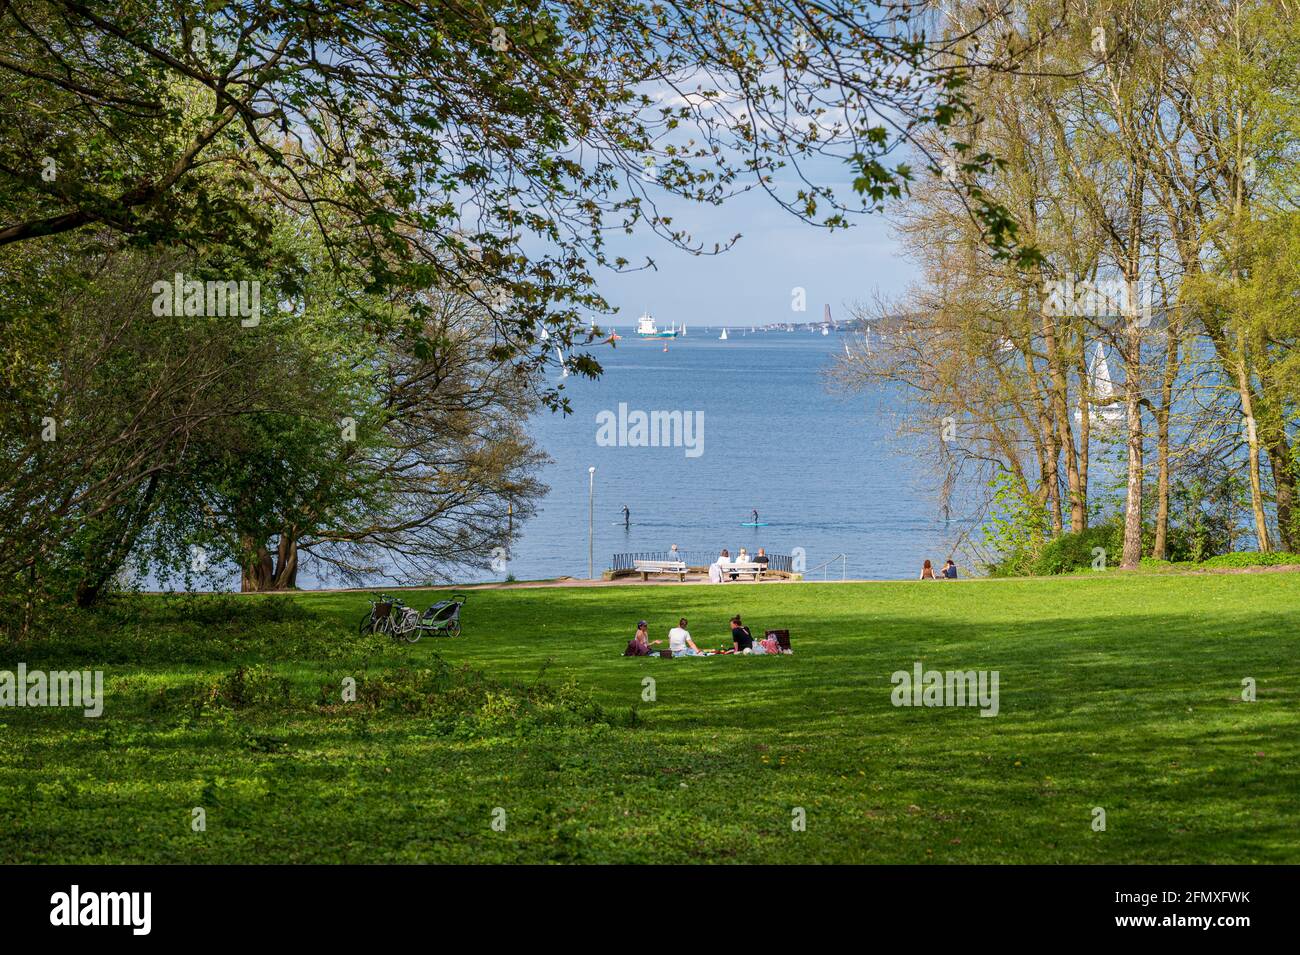 Naherholungsgebiet Diederichsenpark in Kiel mit herrlichem Blick über die Kieler Förde Stock Photo